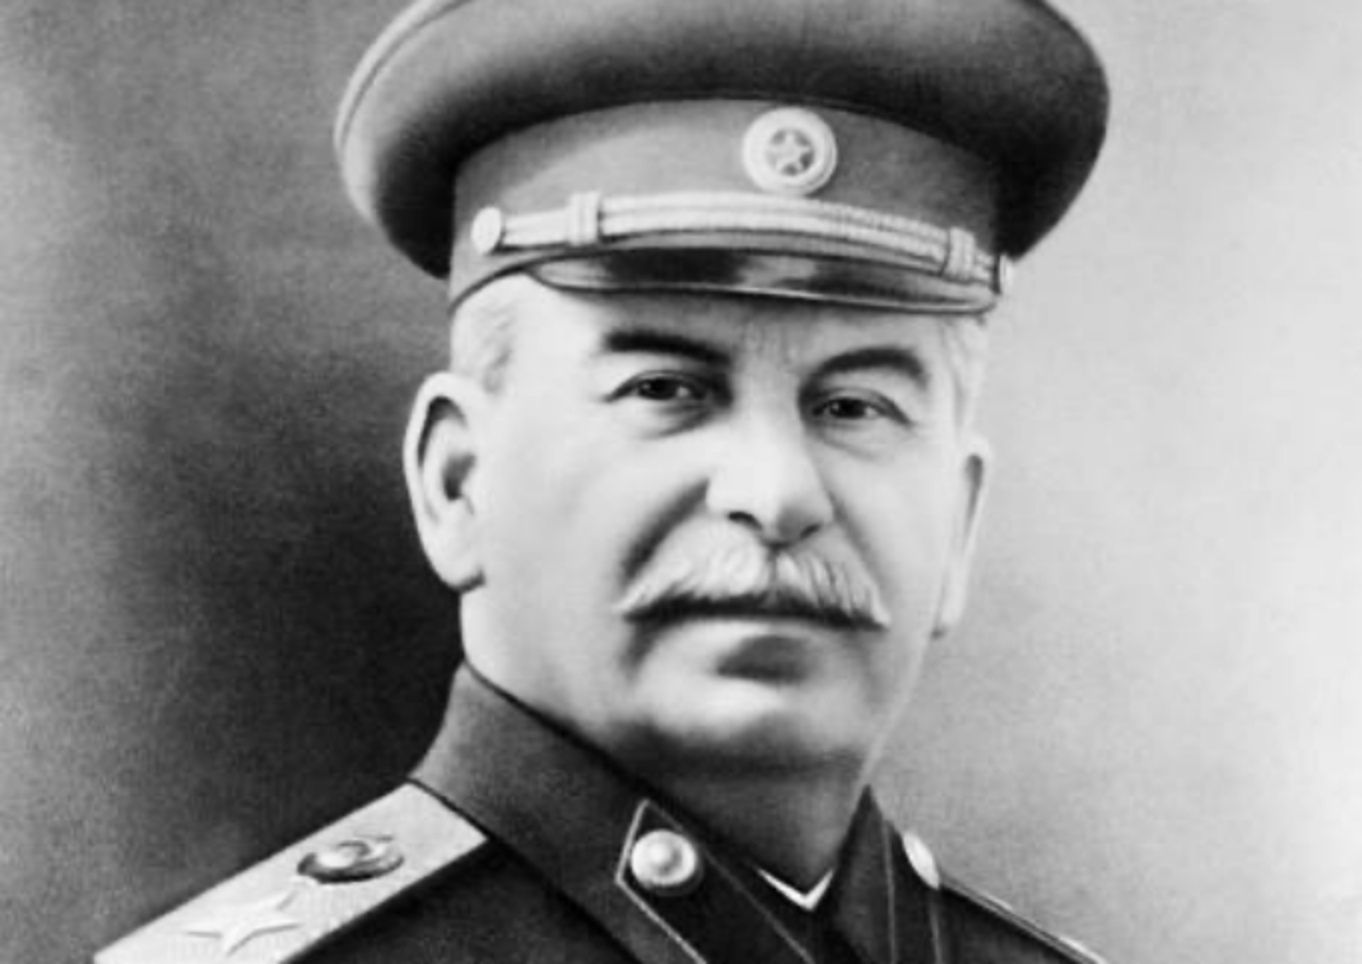 Pomnik Stalina stanie w Murmańsku? Tego chcą komuniści